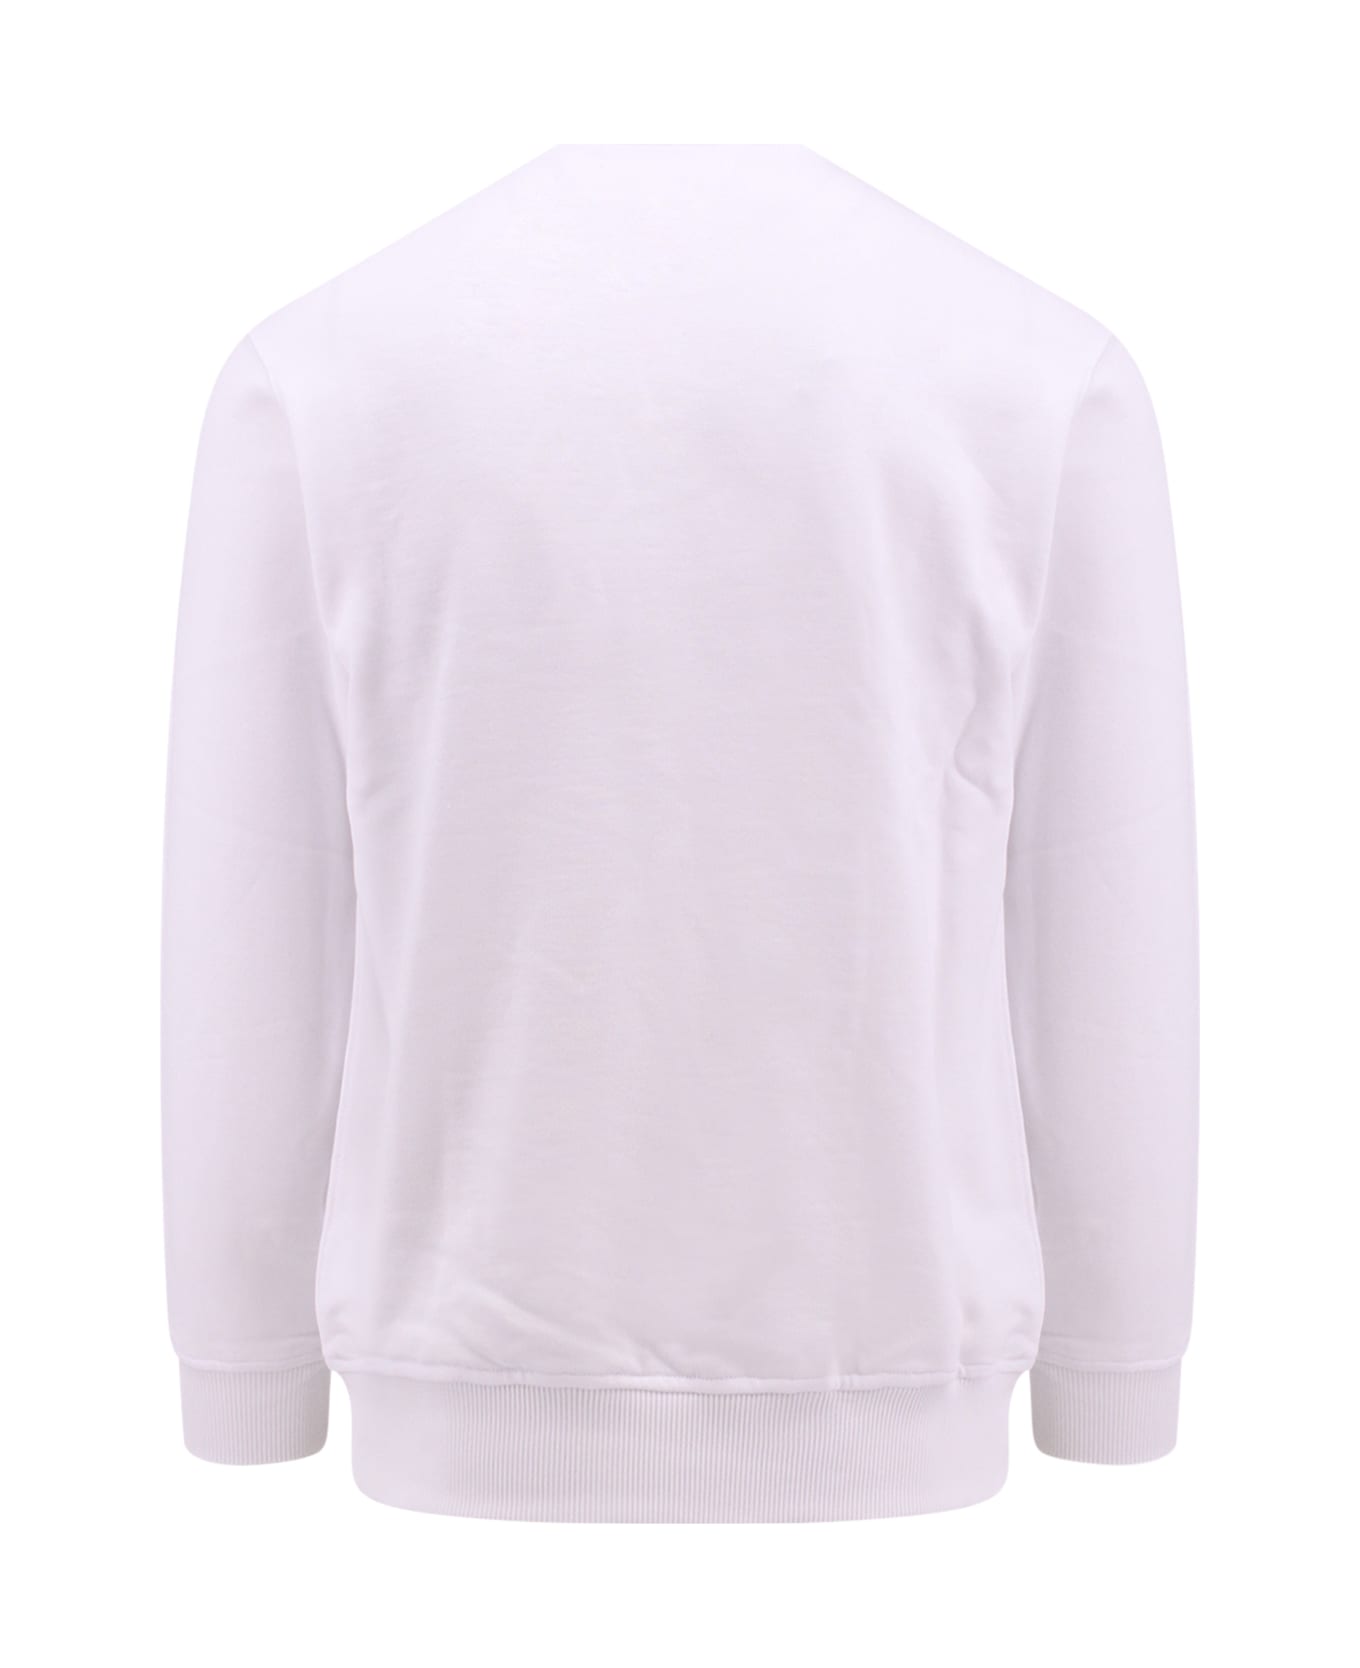 Comme des Garçons Shirt Sweatshirt Fleece - WHITE